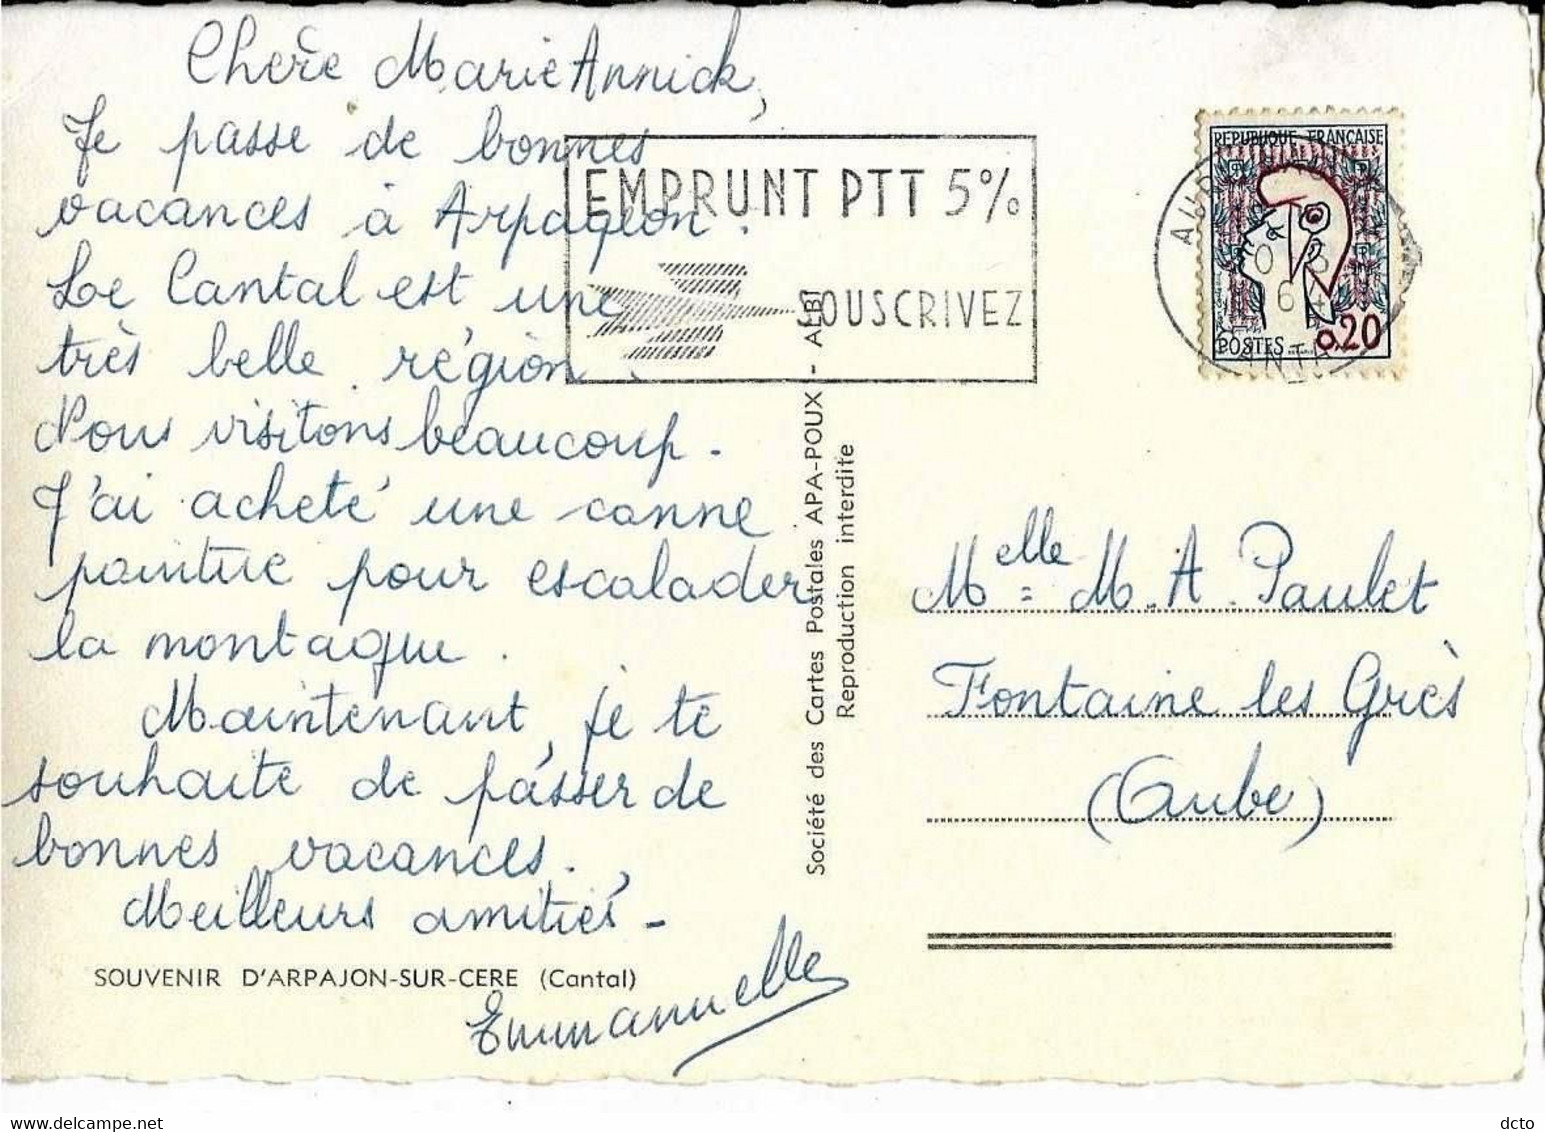 ARPAJON-sur-CERE (15) Souvenir Multivues Ed. Apa-poux, Cpsm GF, Envoi 1964 - Arpajon Sur Cere